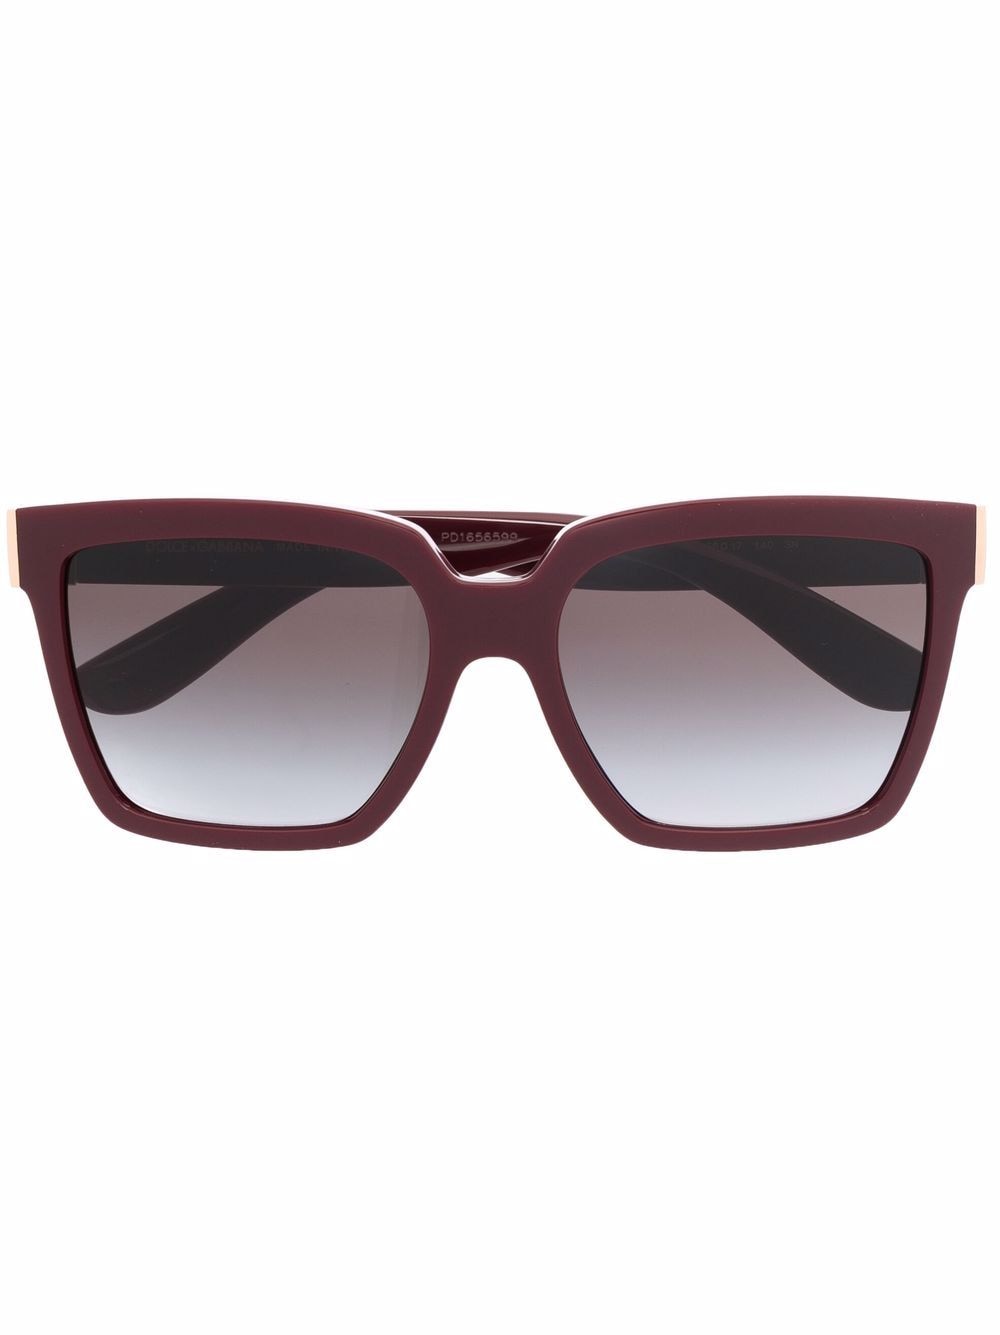 фото Dolce & gabbana eyewear солнцезащитные очки в массивной оправе